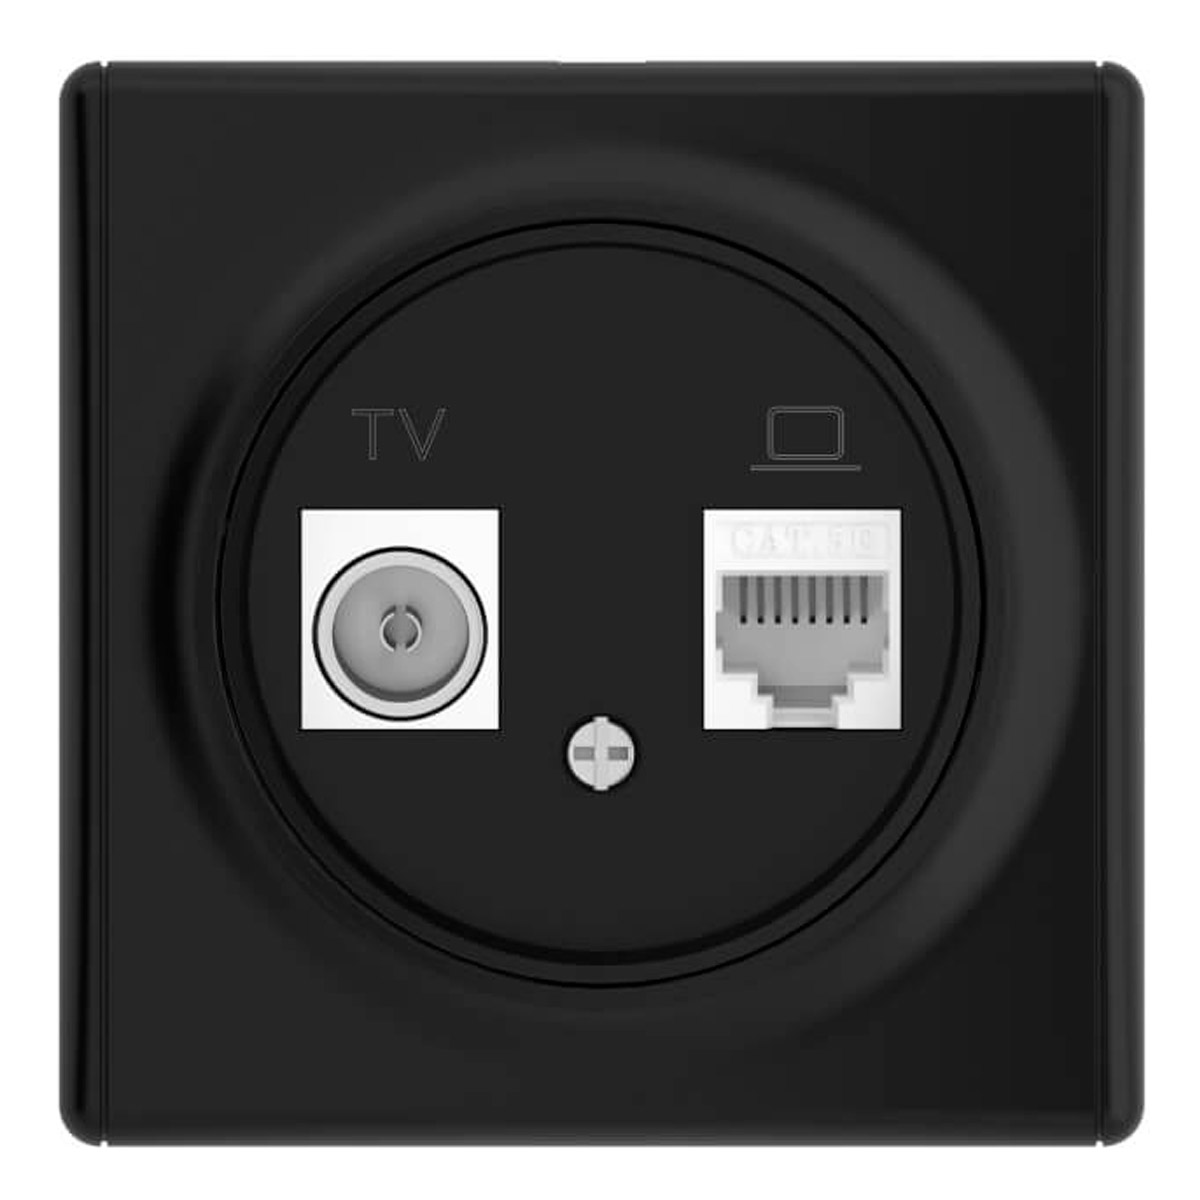 Розетка двойная антенна/компьютер OneKeyElectro Florence TV/RJ45 кат.5e 1E20811303, чёрный